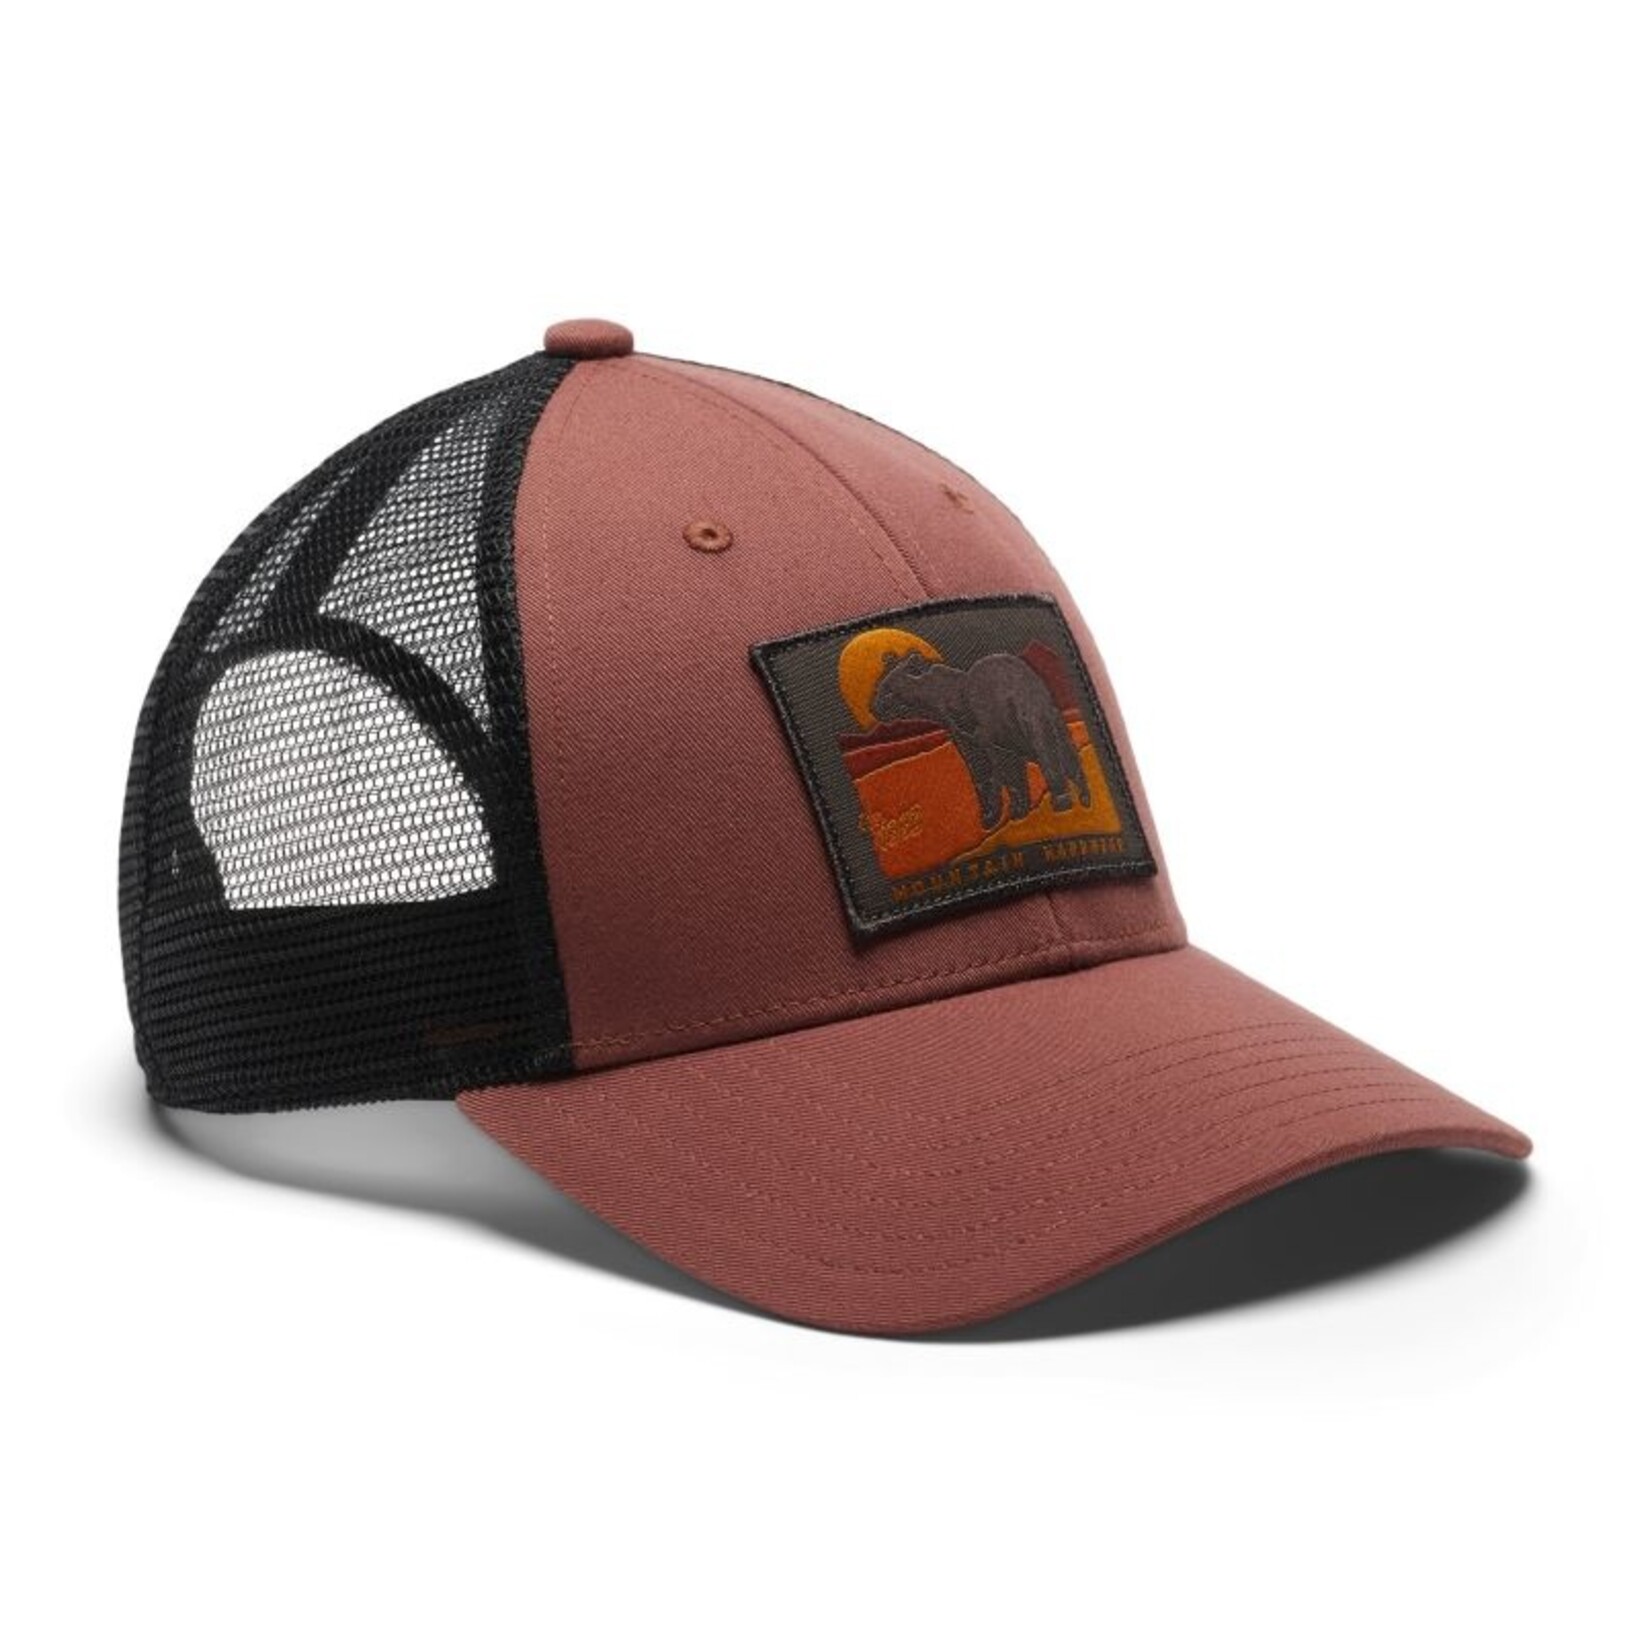 https://cdn.shoplightspeed.com/shops/608253/files/53626664/1652x1652x2/mountain-hardwear-93-bear-trucker-hat.jpg